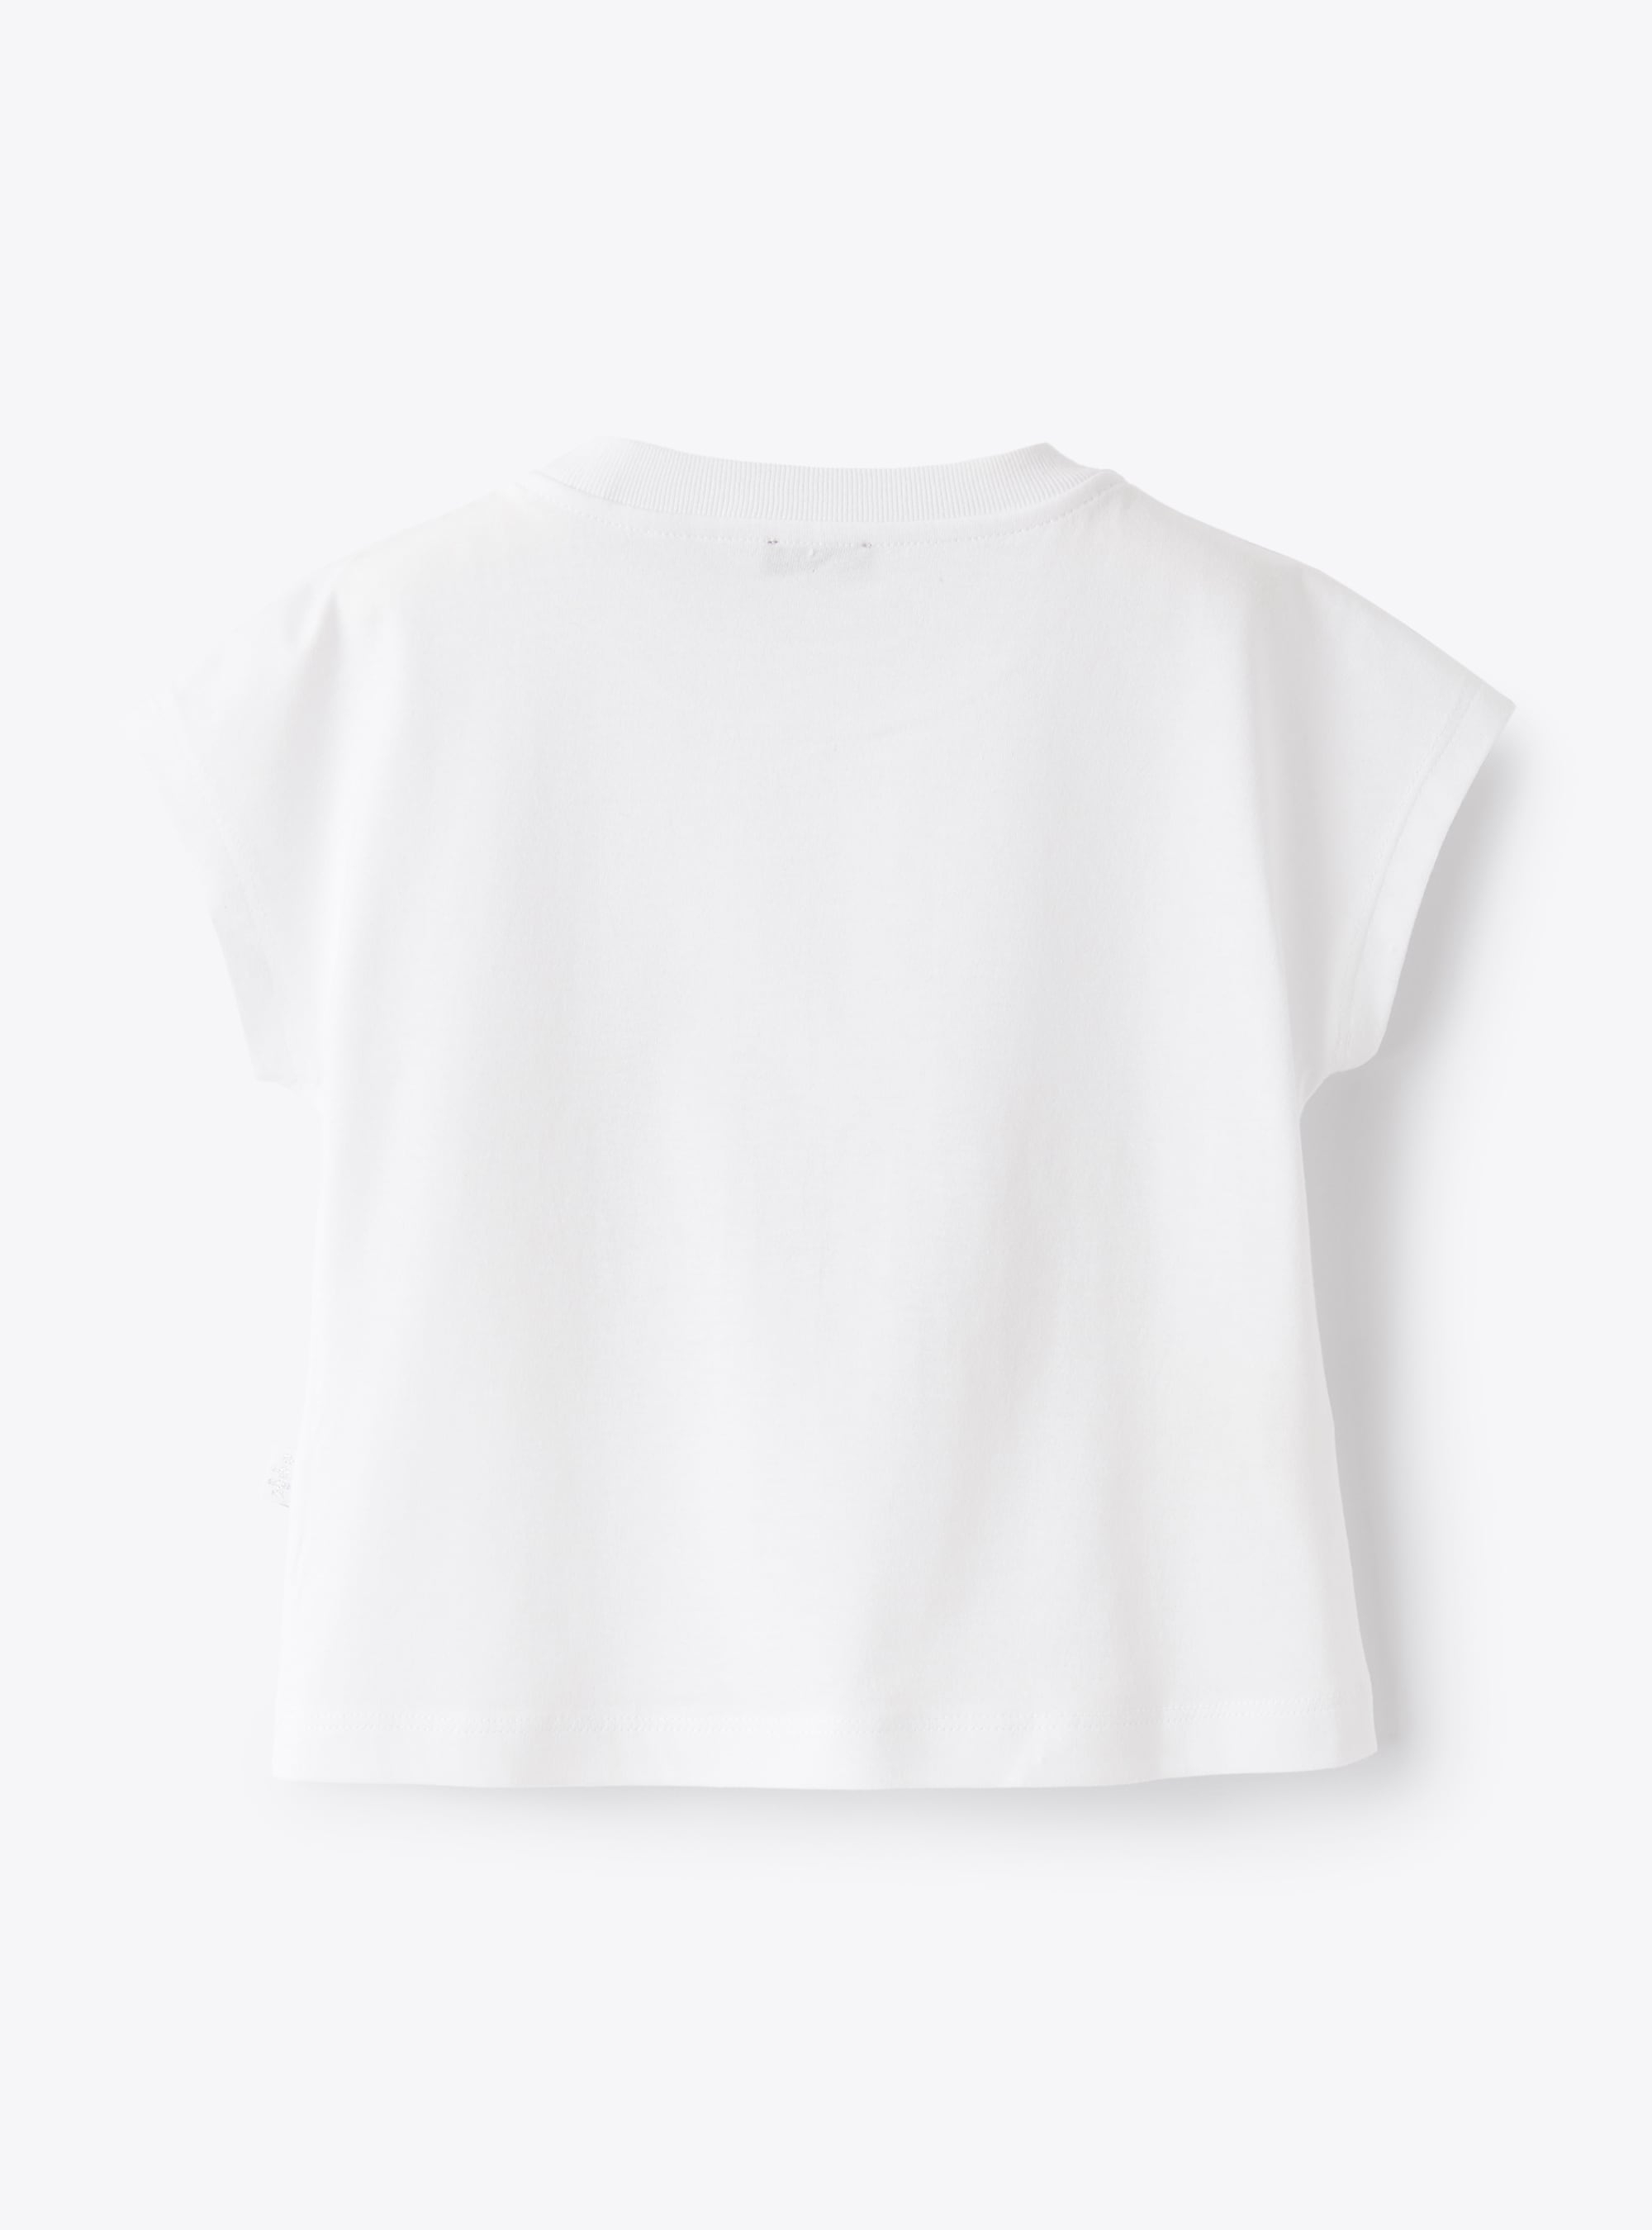 Weißes T-Shirt mit aufgedruckter Landschaft - Weiss | Il Gufo